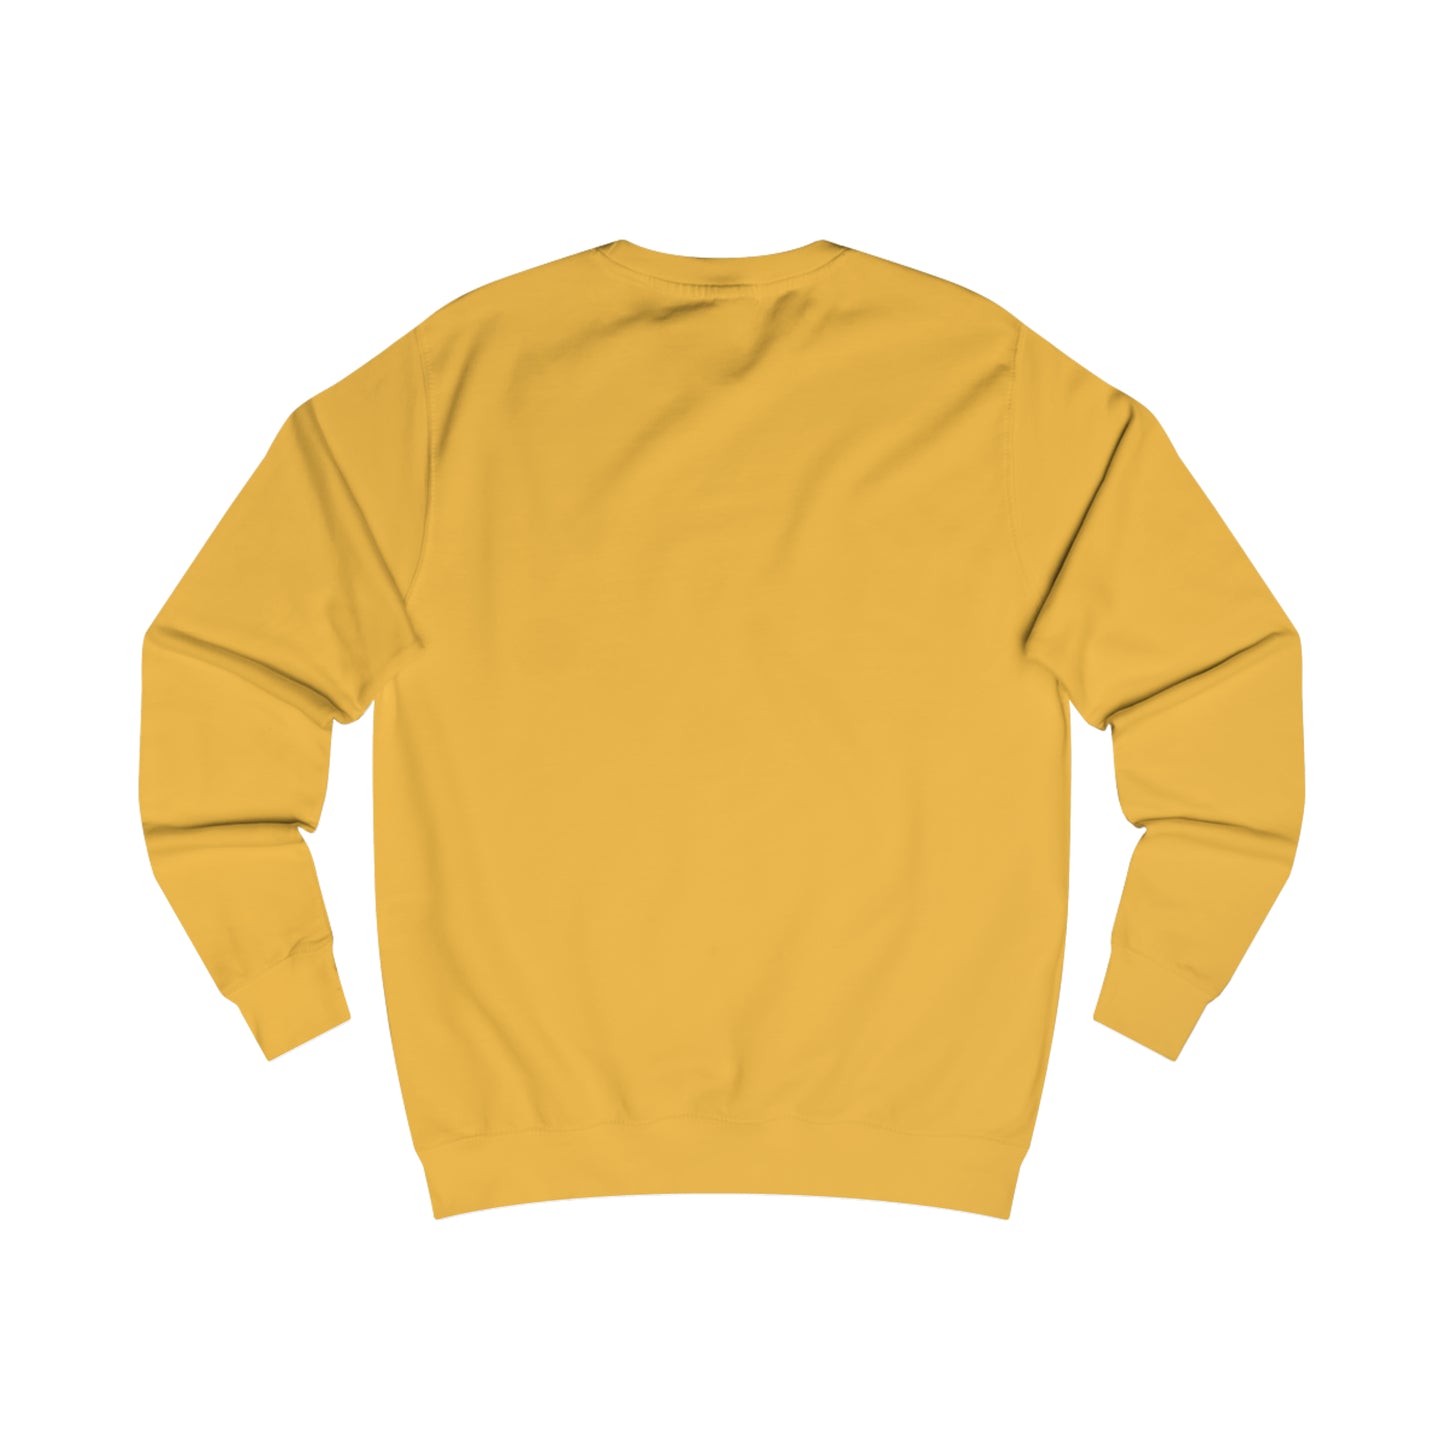 Men's SC classics sweatshirt